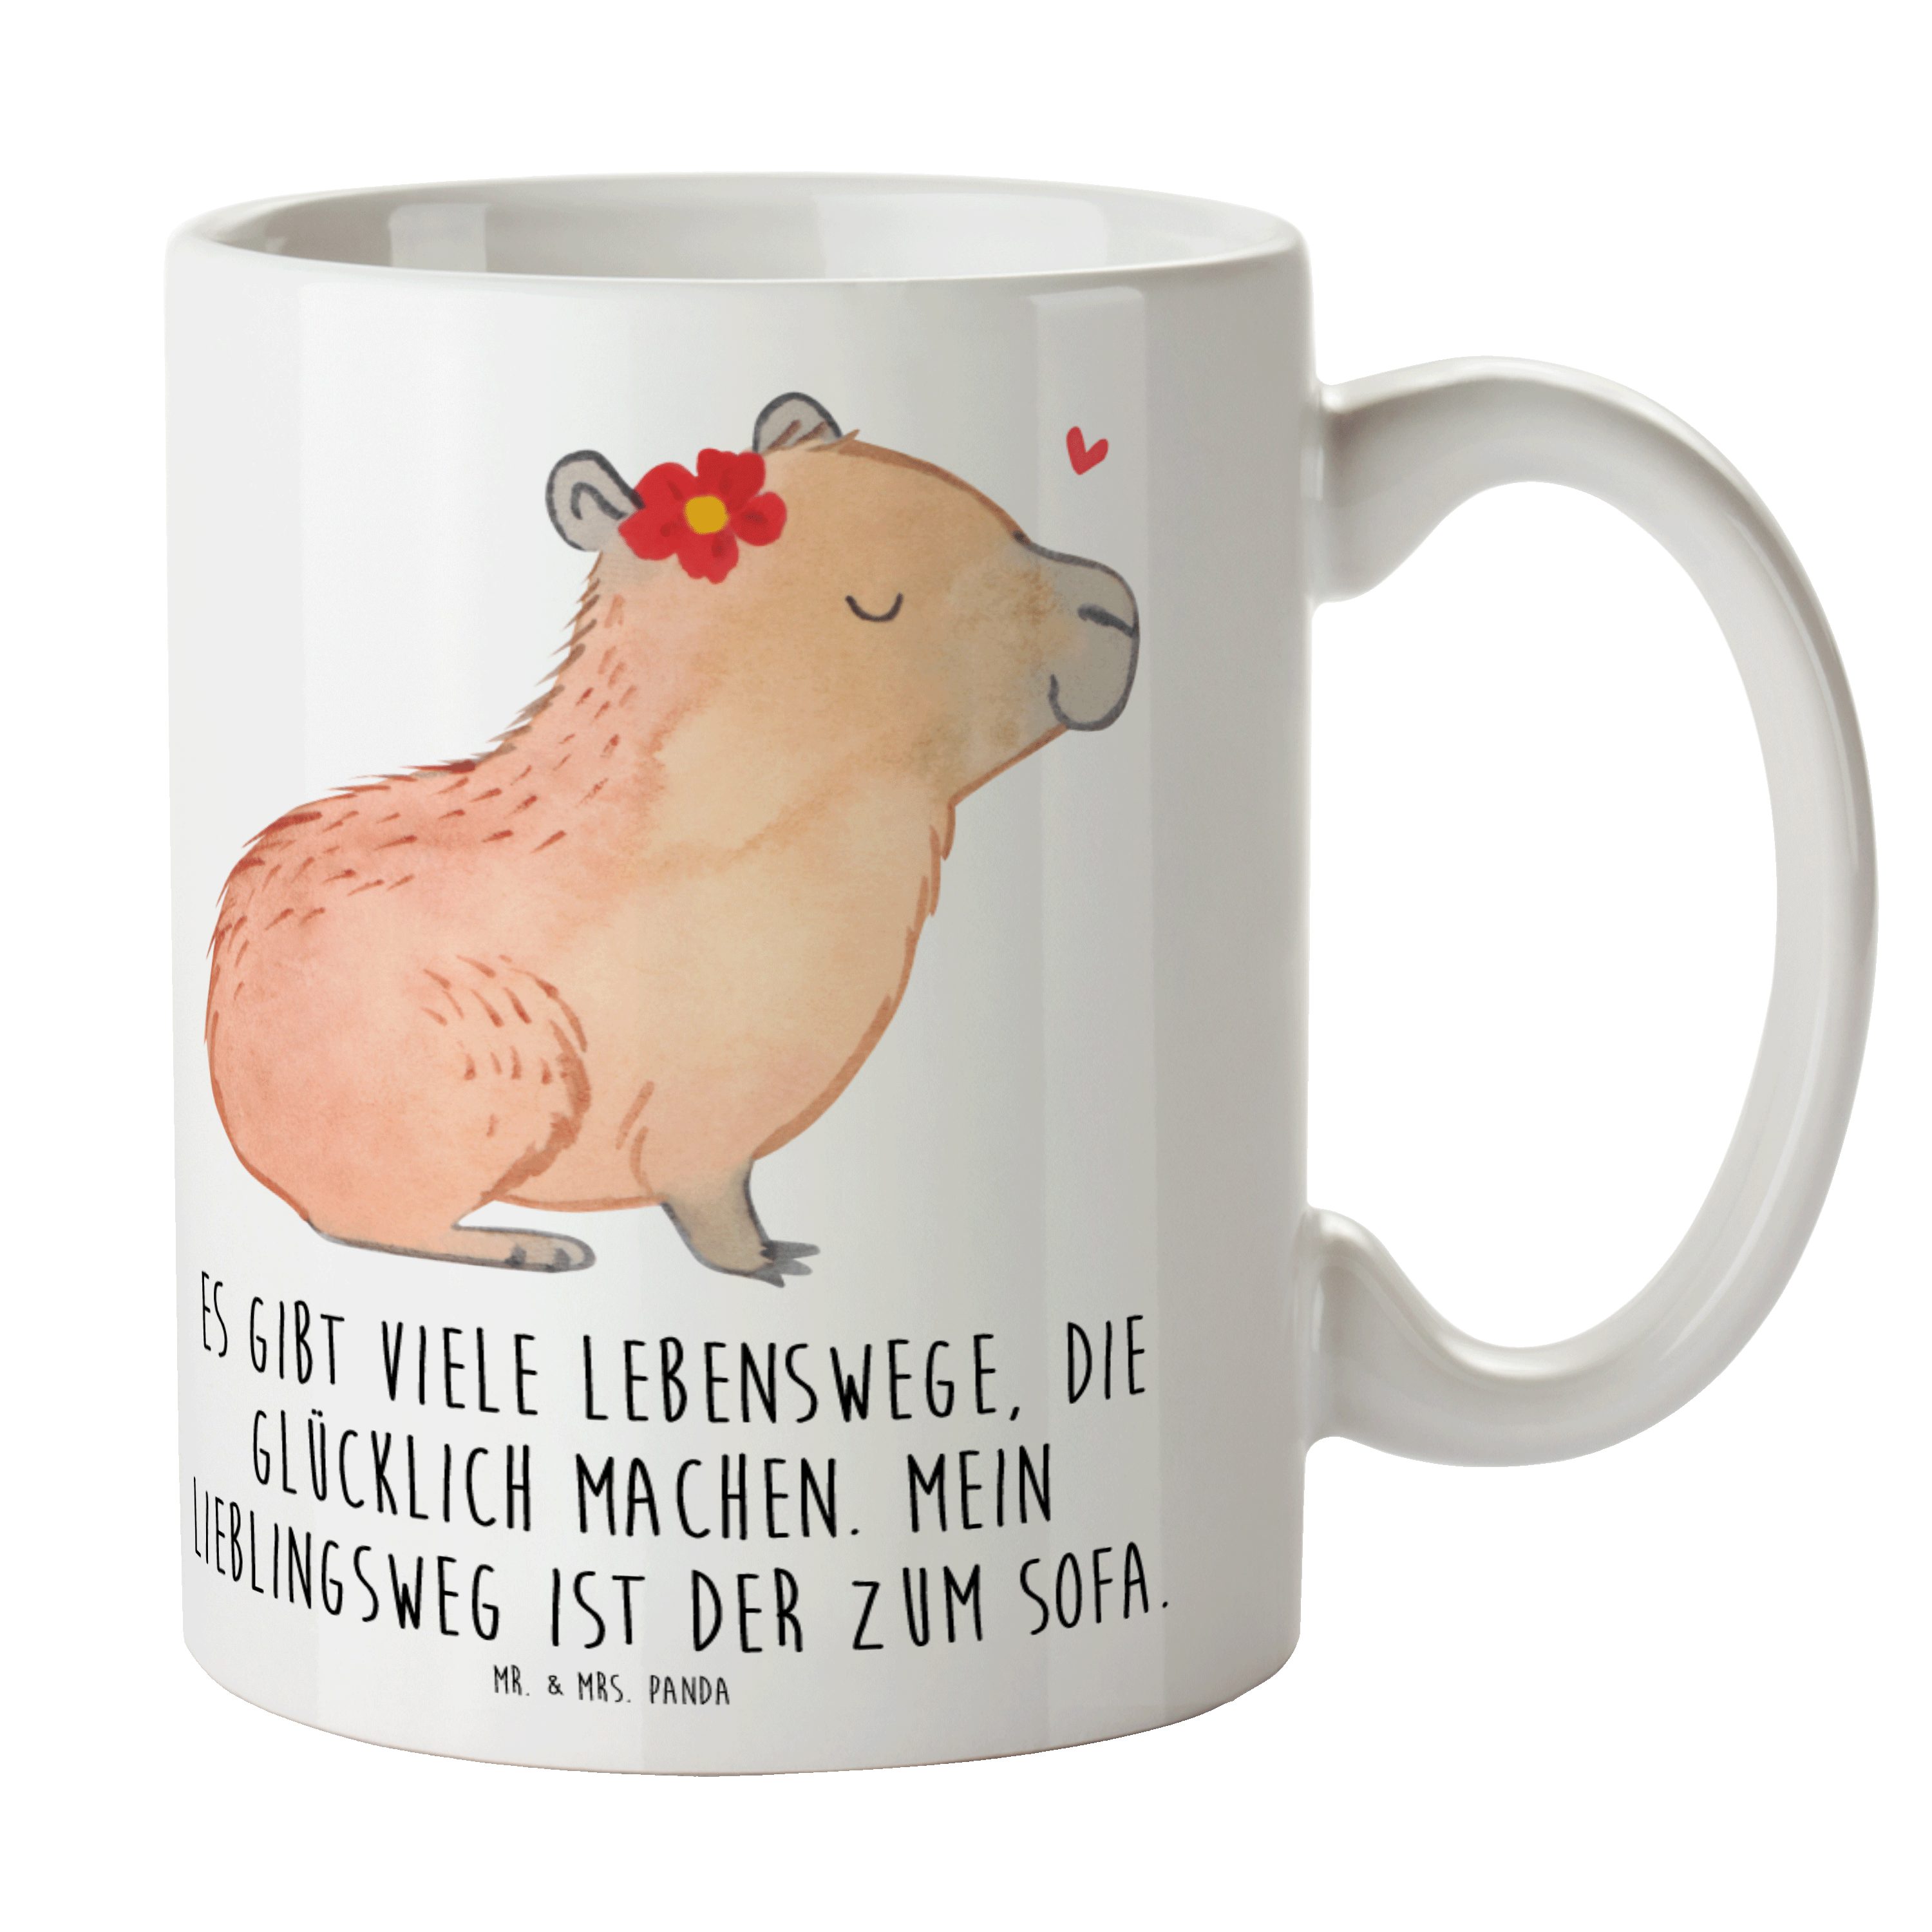 Mr. & Mrs. Panda Tasse Capybara Blume - Weiß - Geschenk, Teebecher, Geschenk Tasse, Tiere, l, Keramik